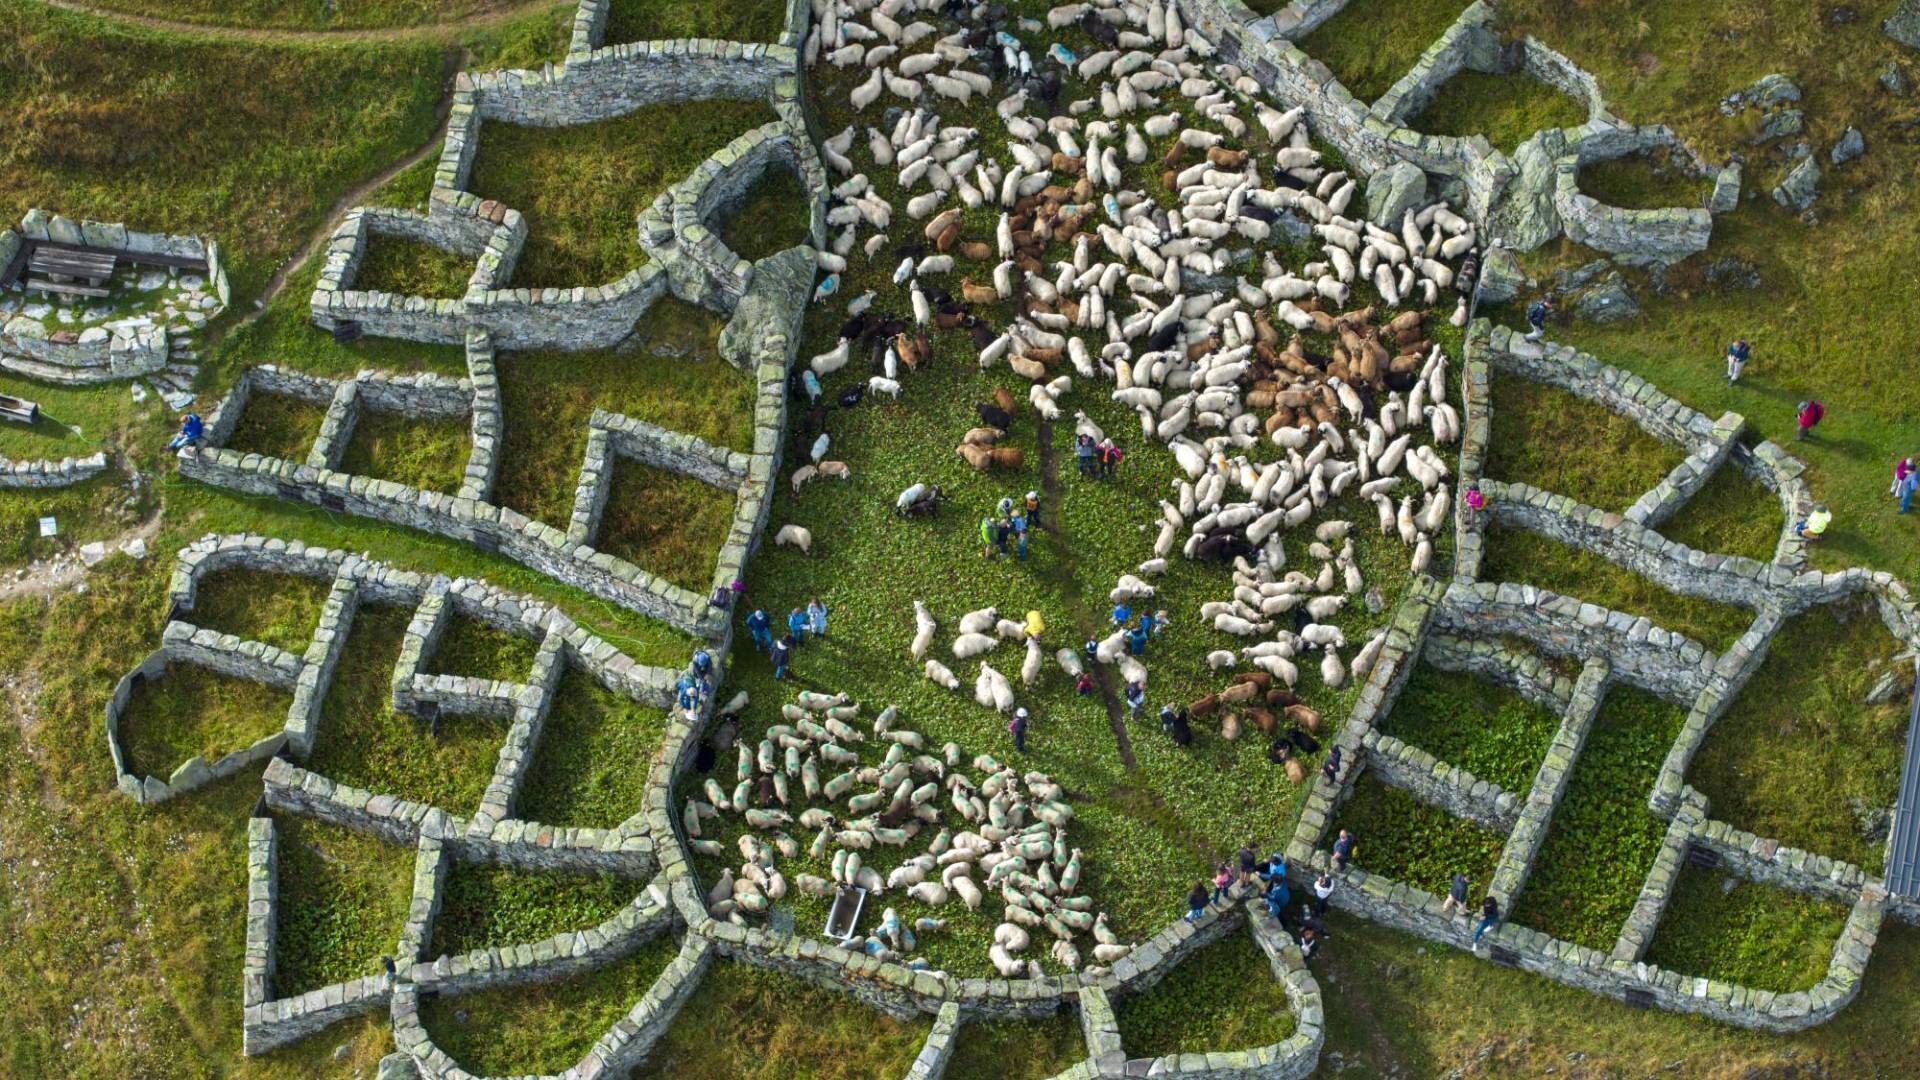 $!Los corrales de piedra Färricha en Belalp, Suiza, datan de la época medieval. Se utilizan para dividir las ovejas por dueño.